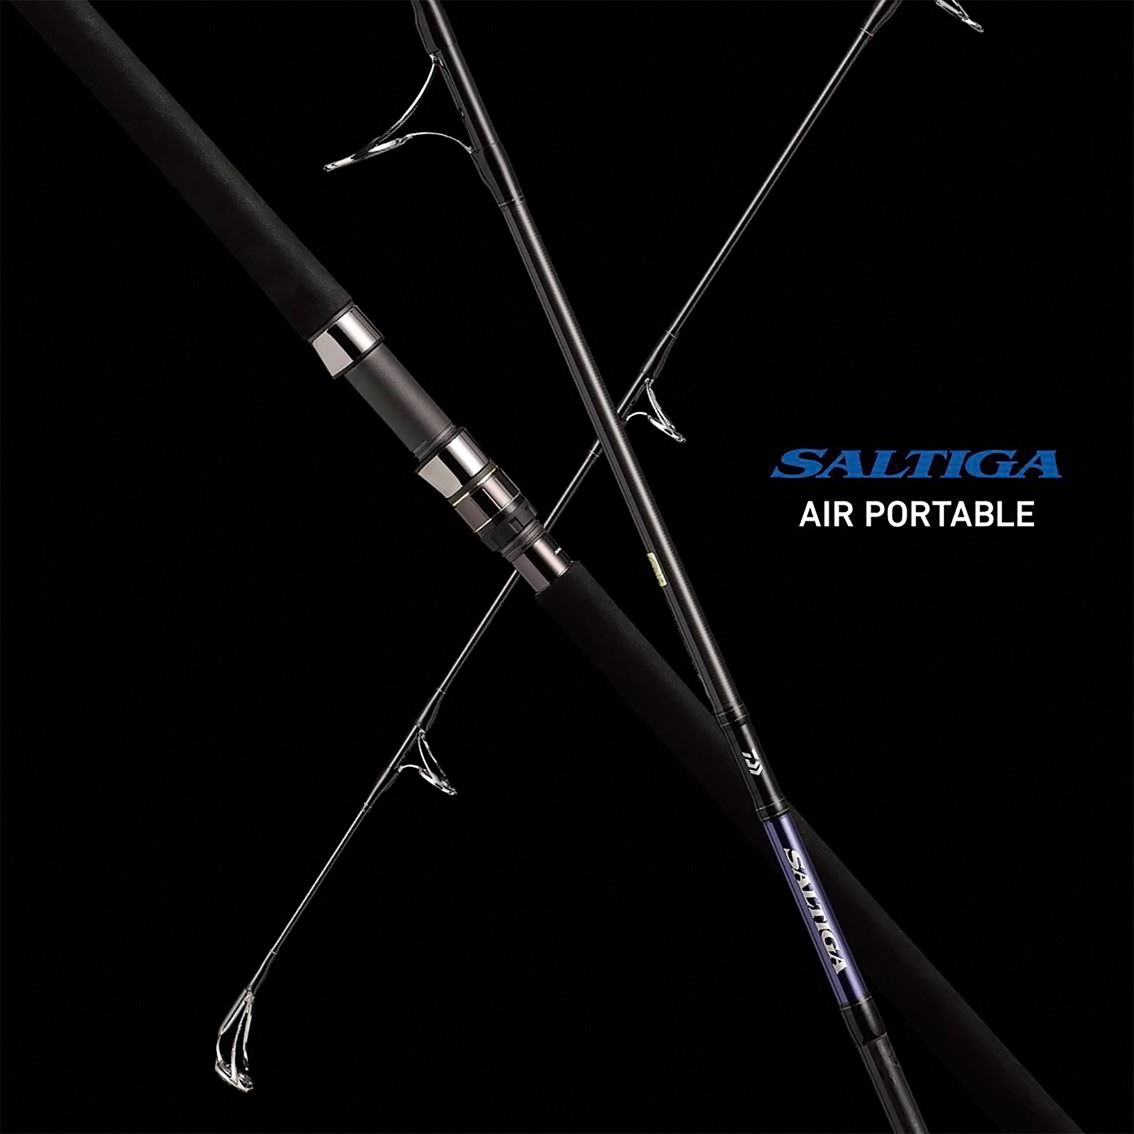 ダイワ ソルティガ エアポータブル SALTIGA AP J59S-3 (ジギングロッド) - 釣り具の販売、通販なら、フィッシング遊-WEB本店  ダイワ／シマノ／がまかつの釣具ならおまかせ